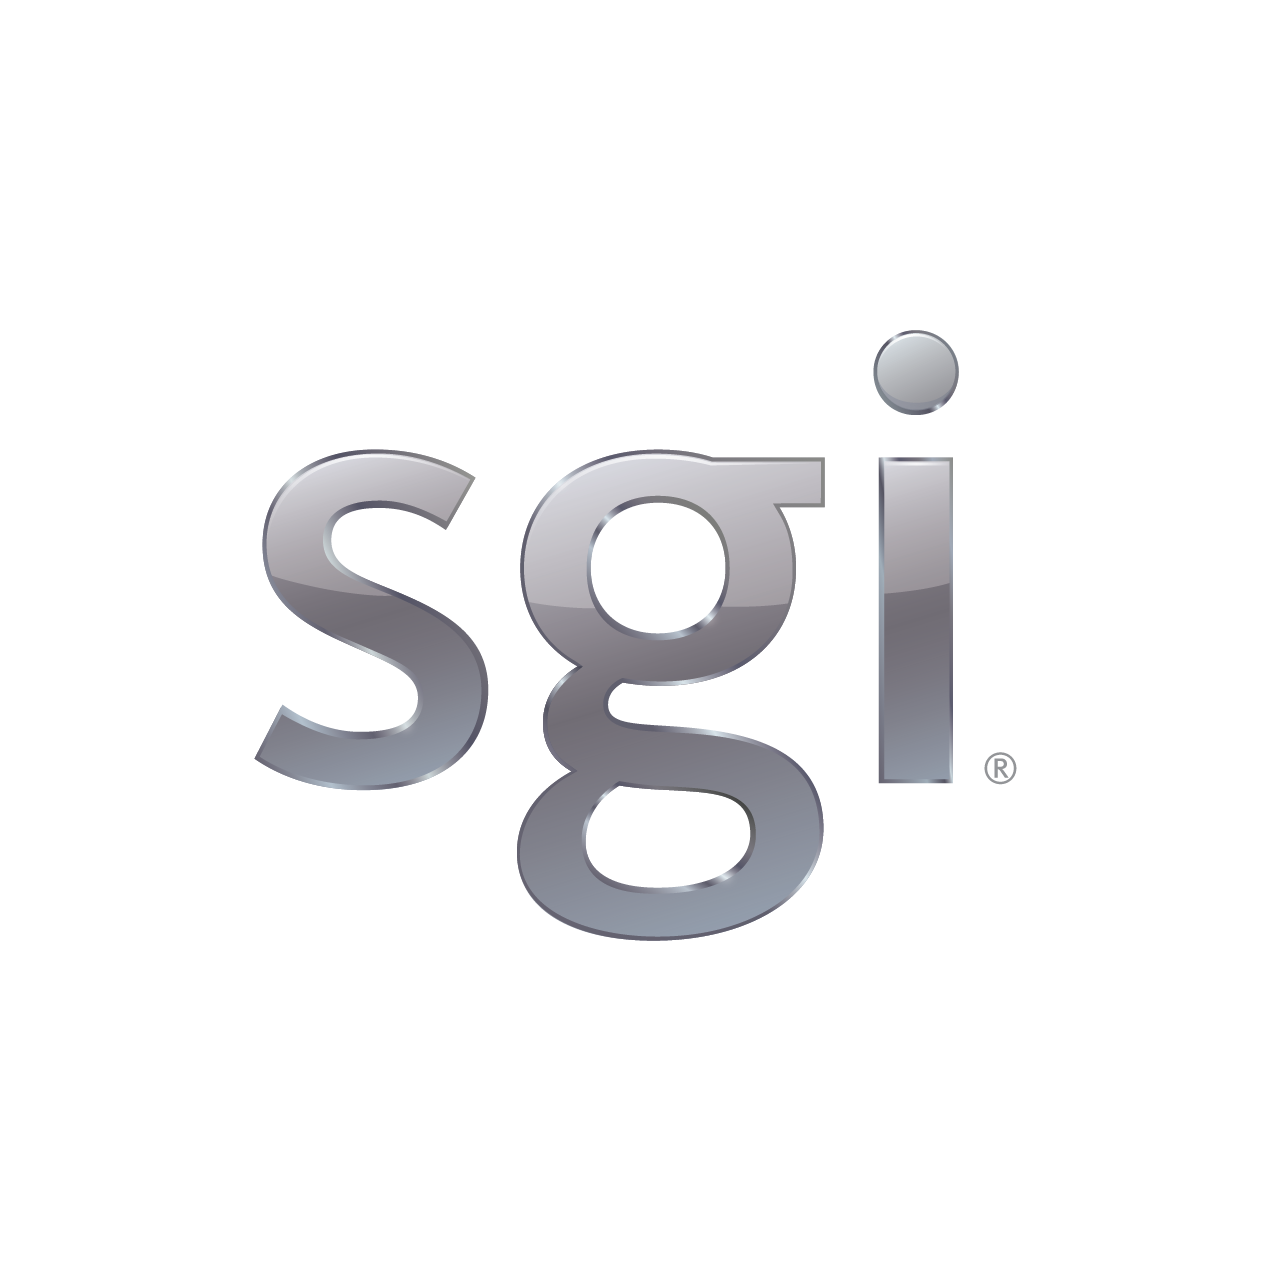 SGI, www.sgi.com